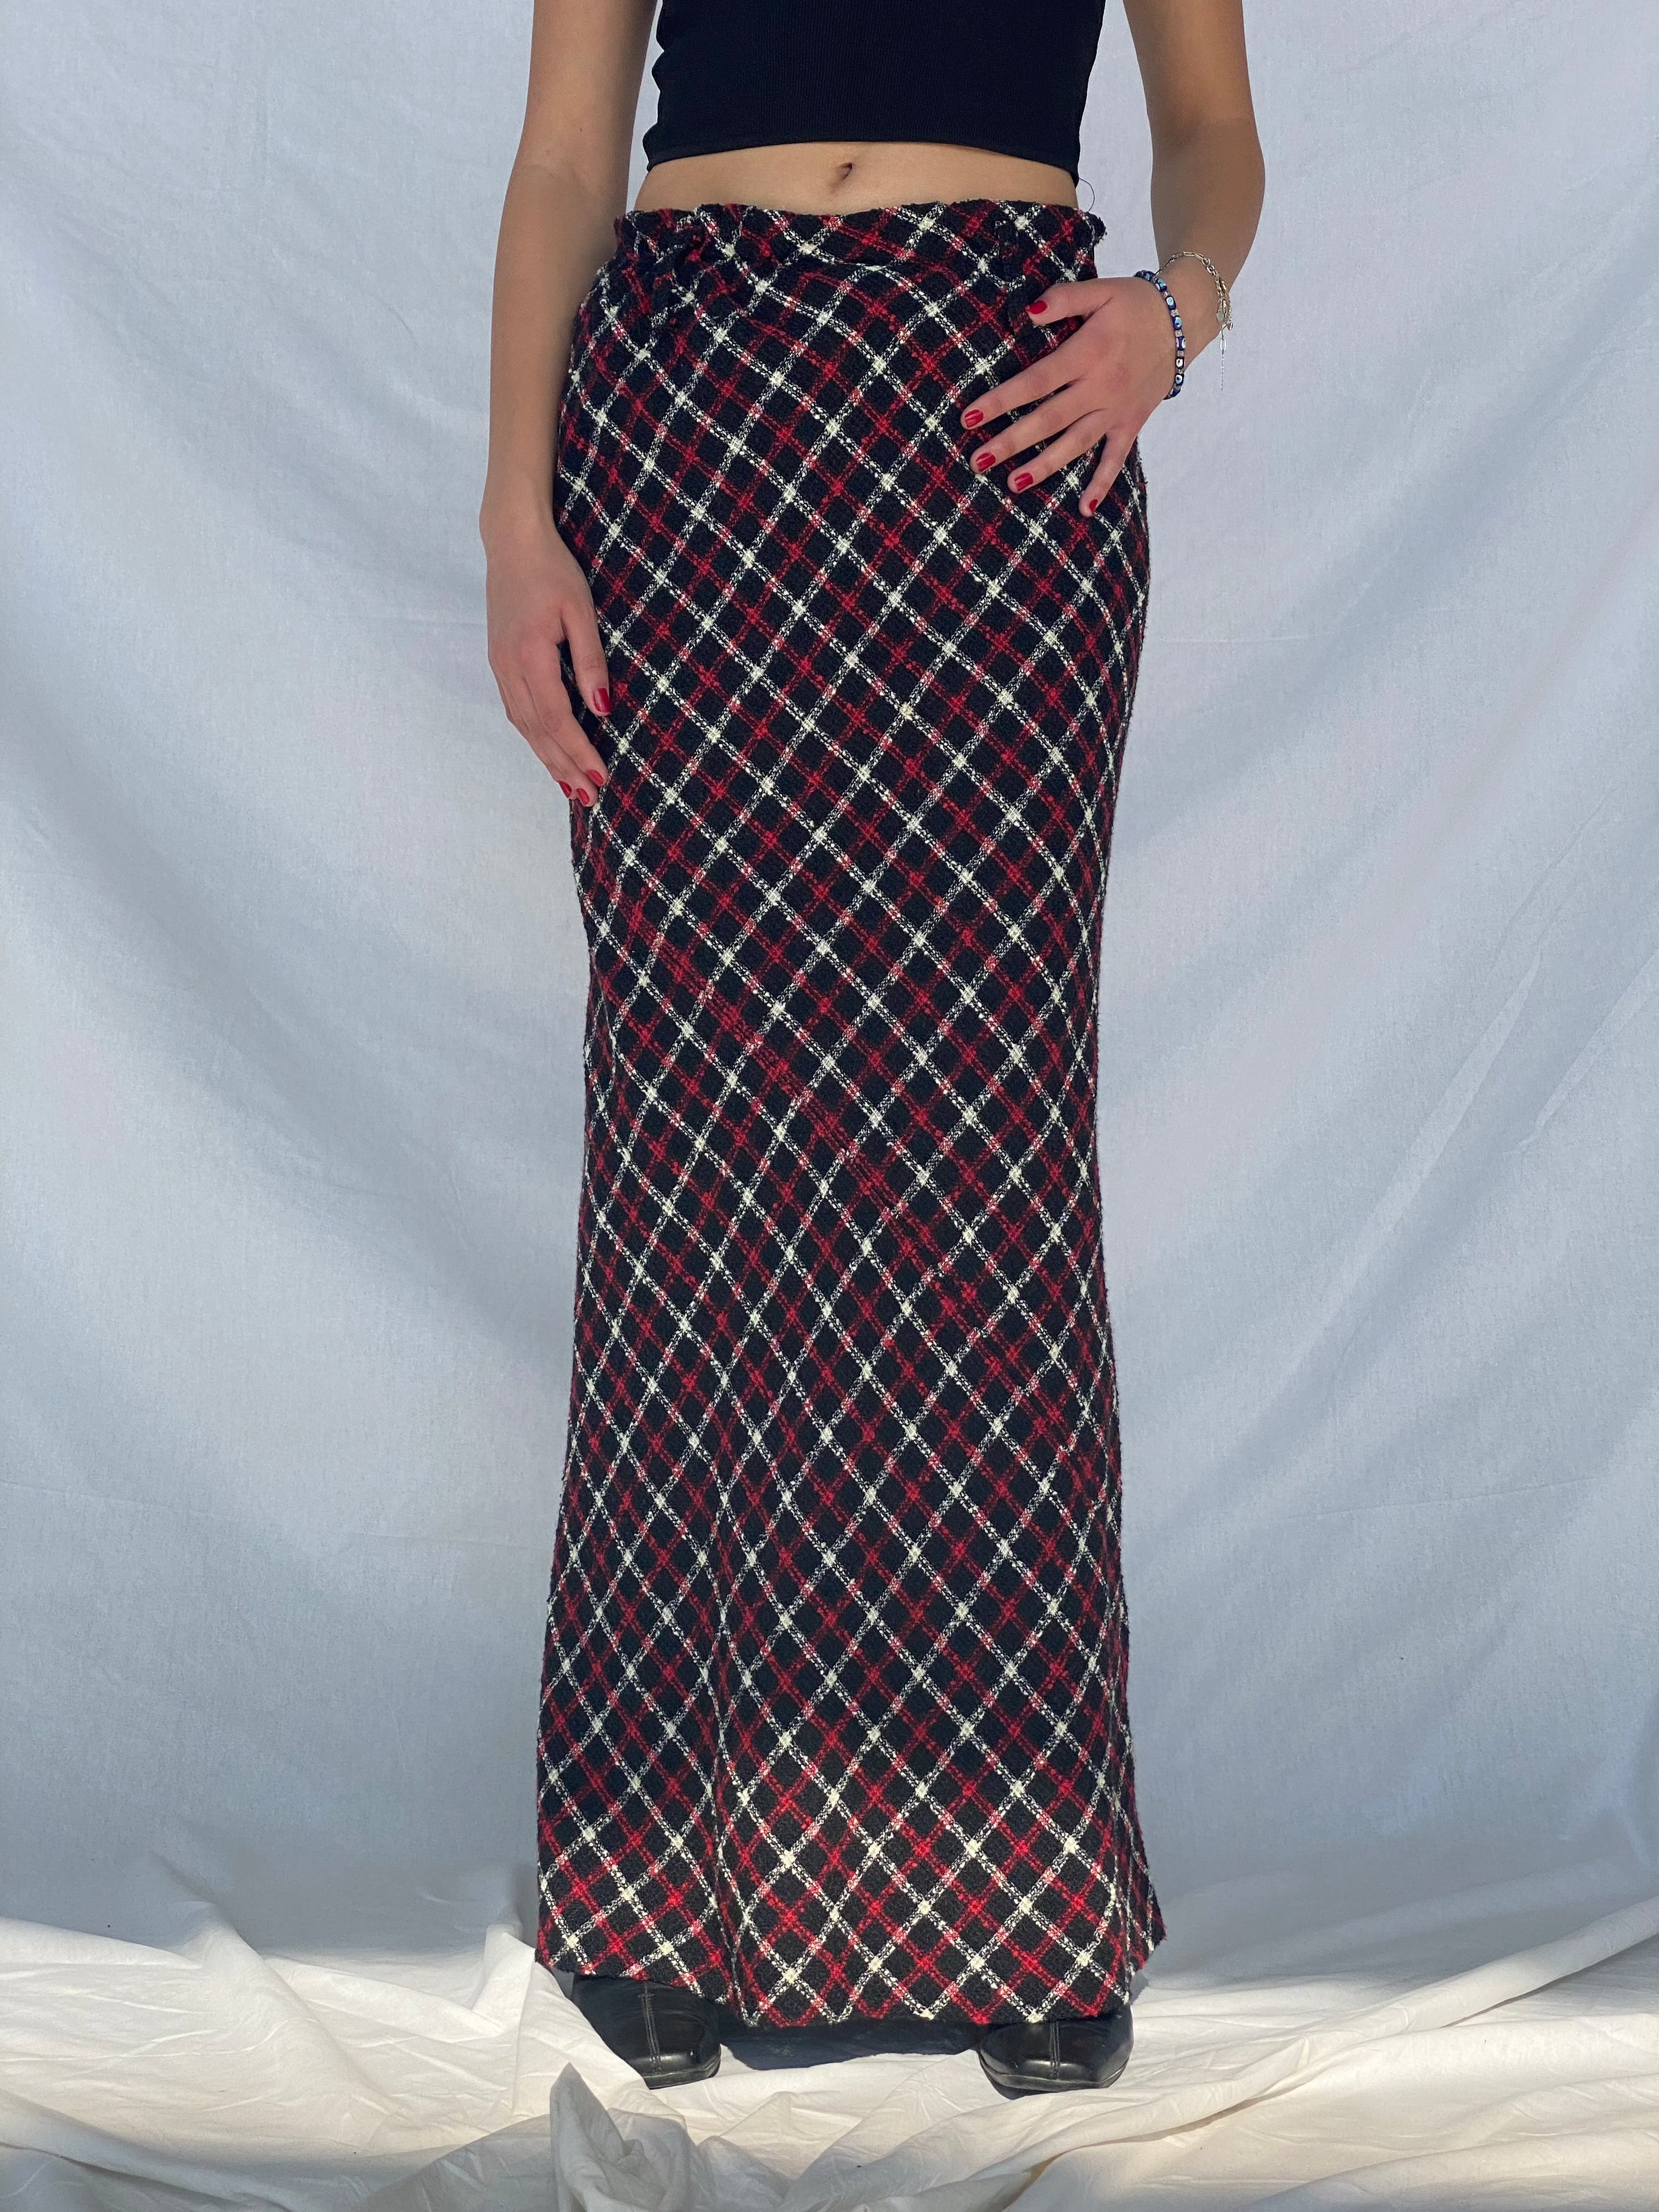 NUDE Tweed Maxi Skirt - Balagan Vintage Maxi Skirt 90s, outerwear, plaid, plaid skirt, skirt, vintage